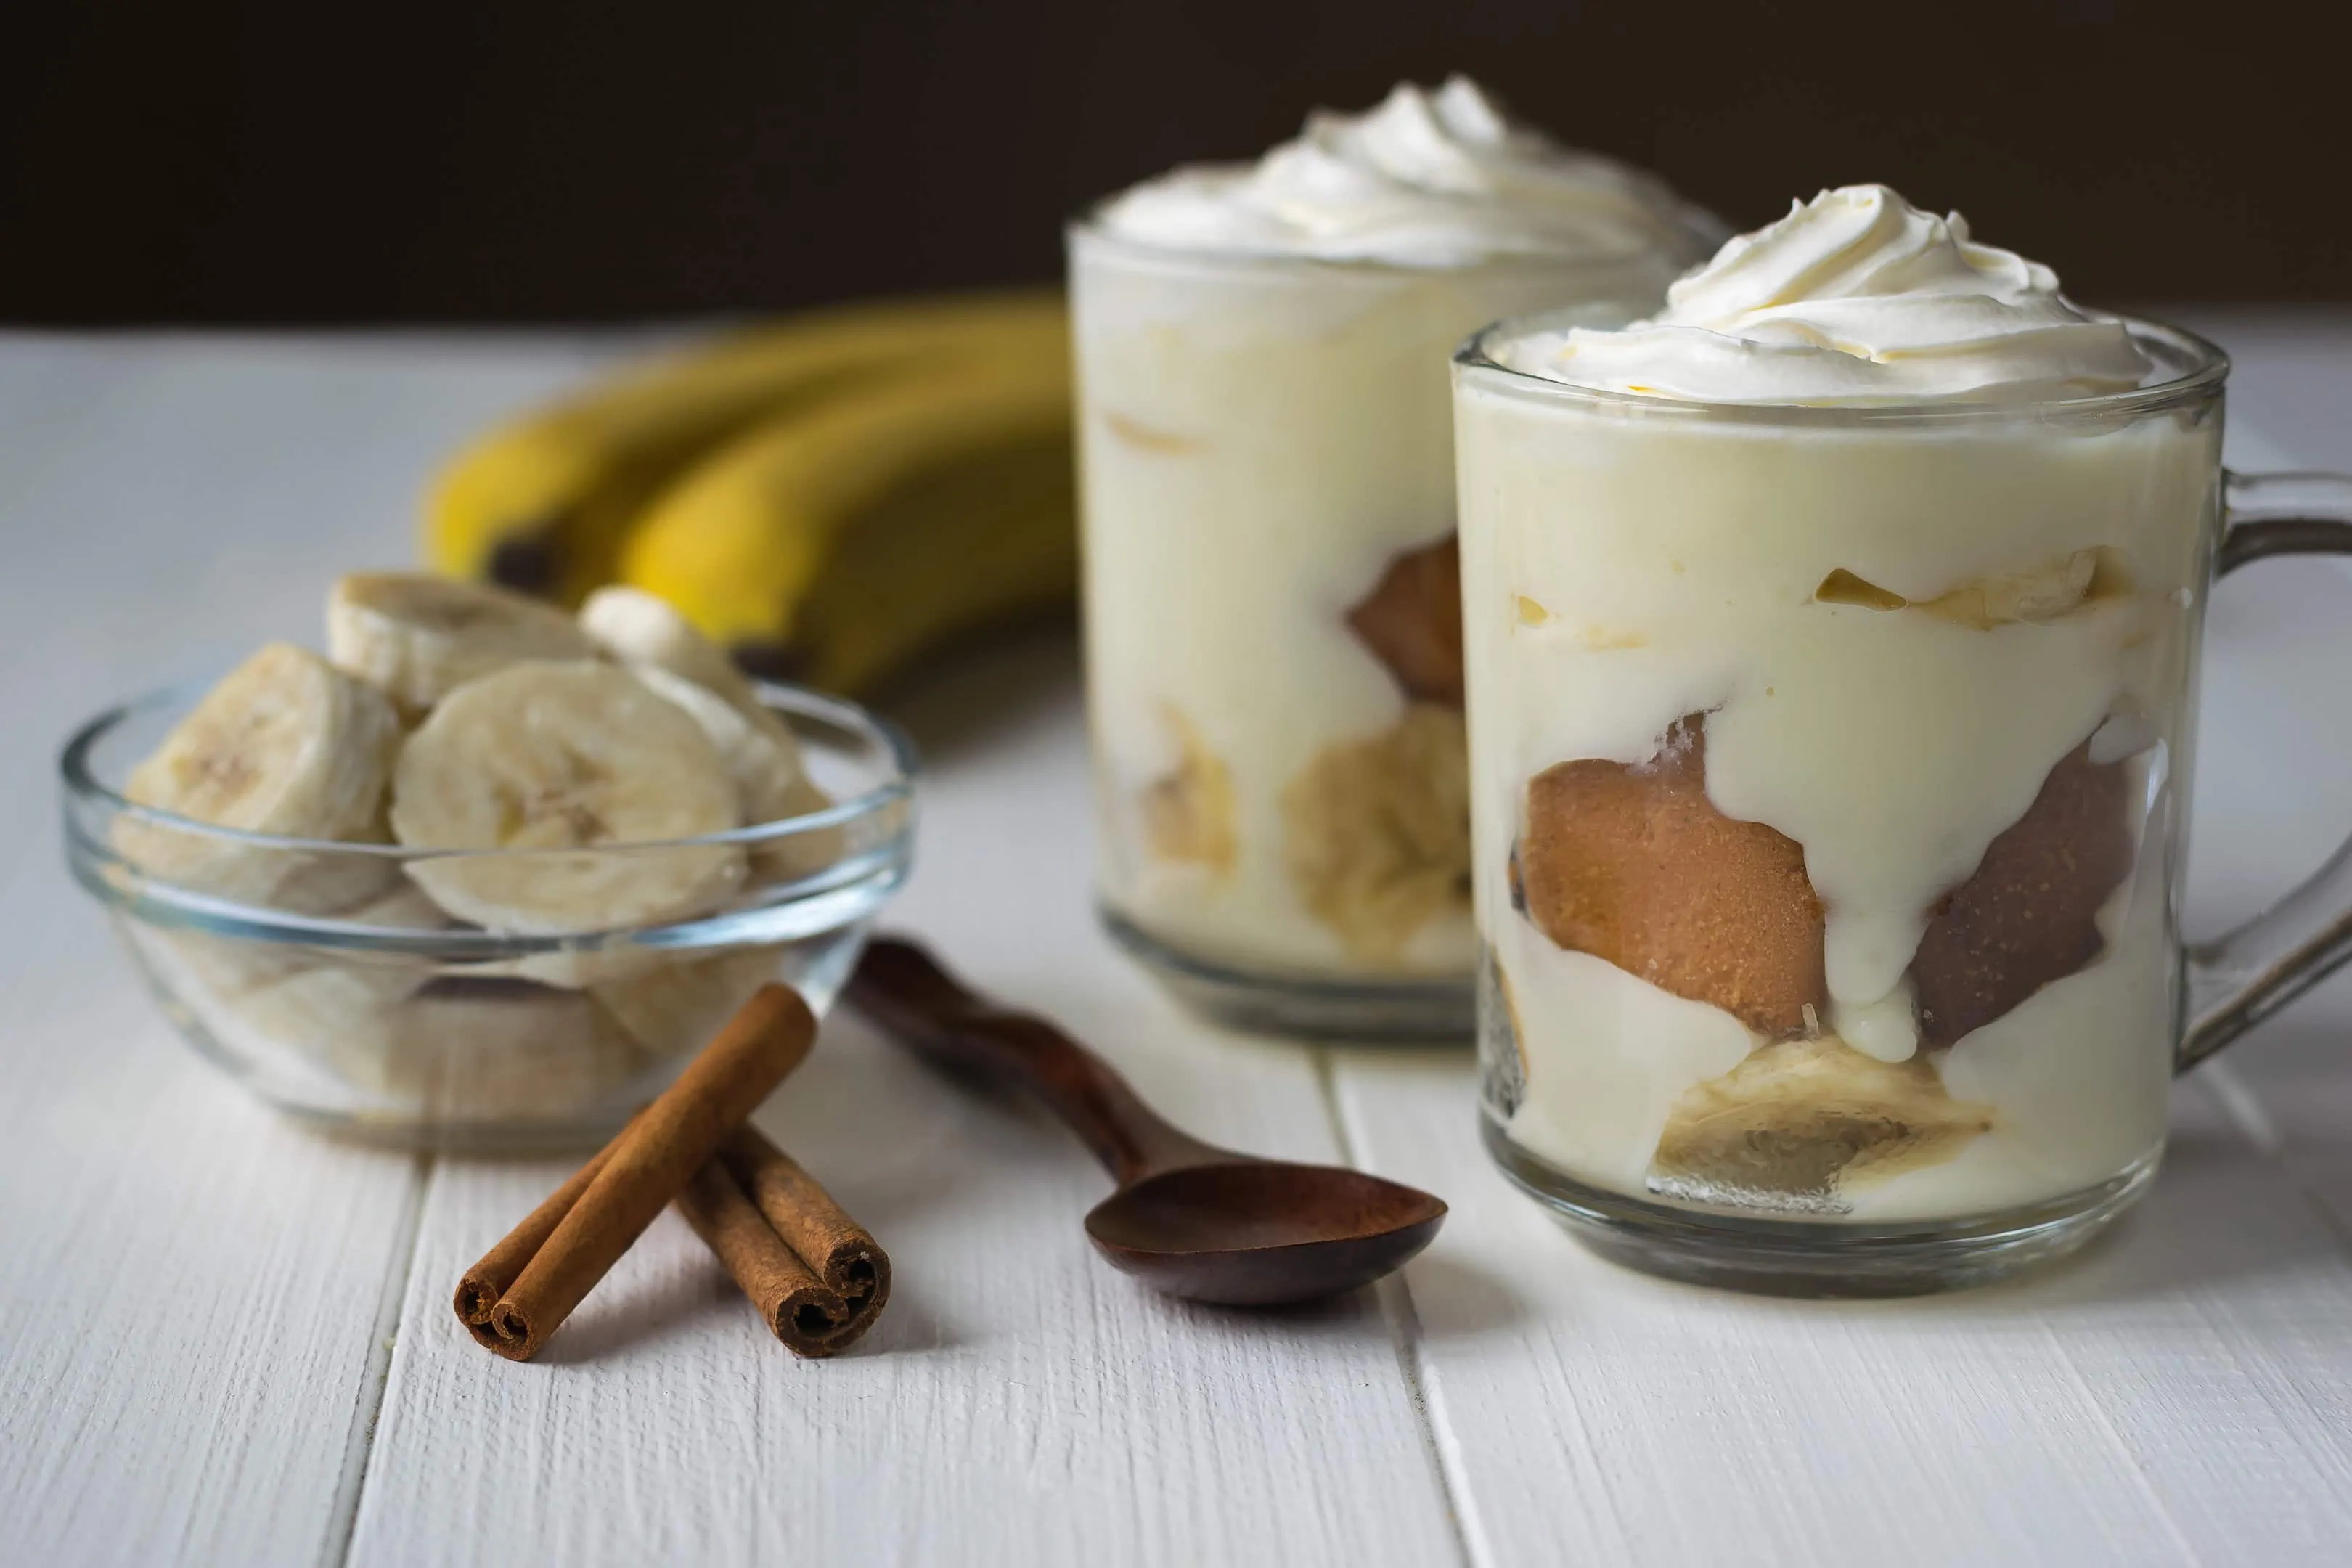 Two glasses of banana pudding no bake with banana slices and cinnamon